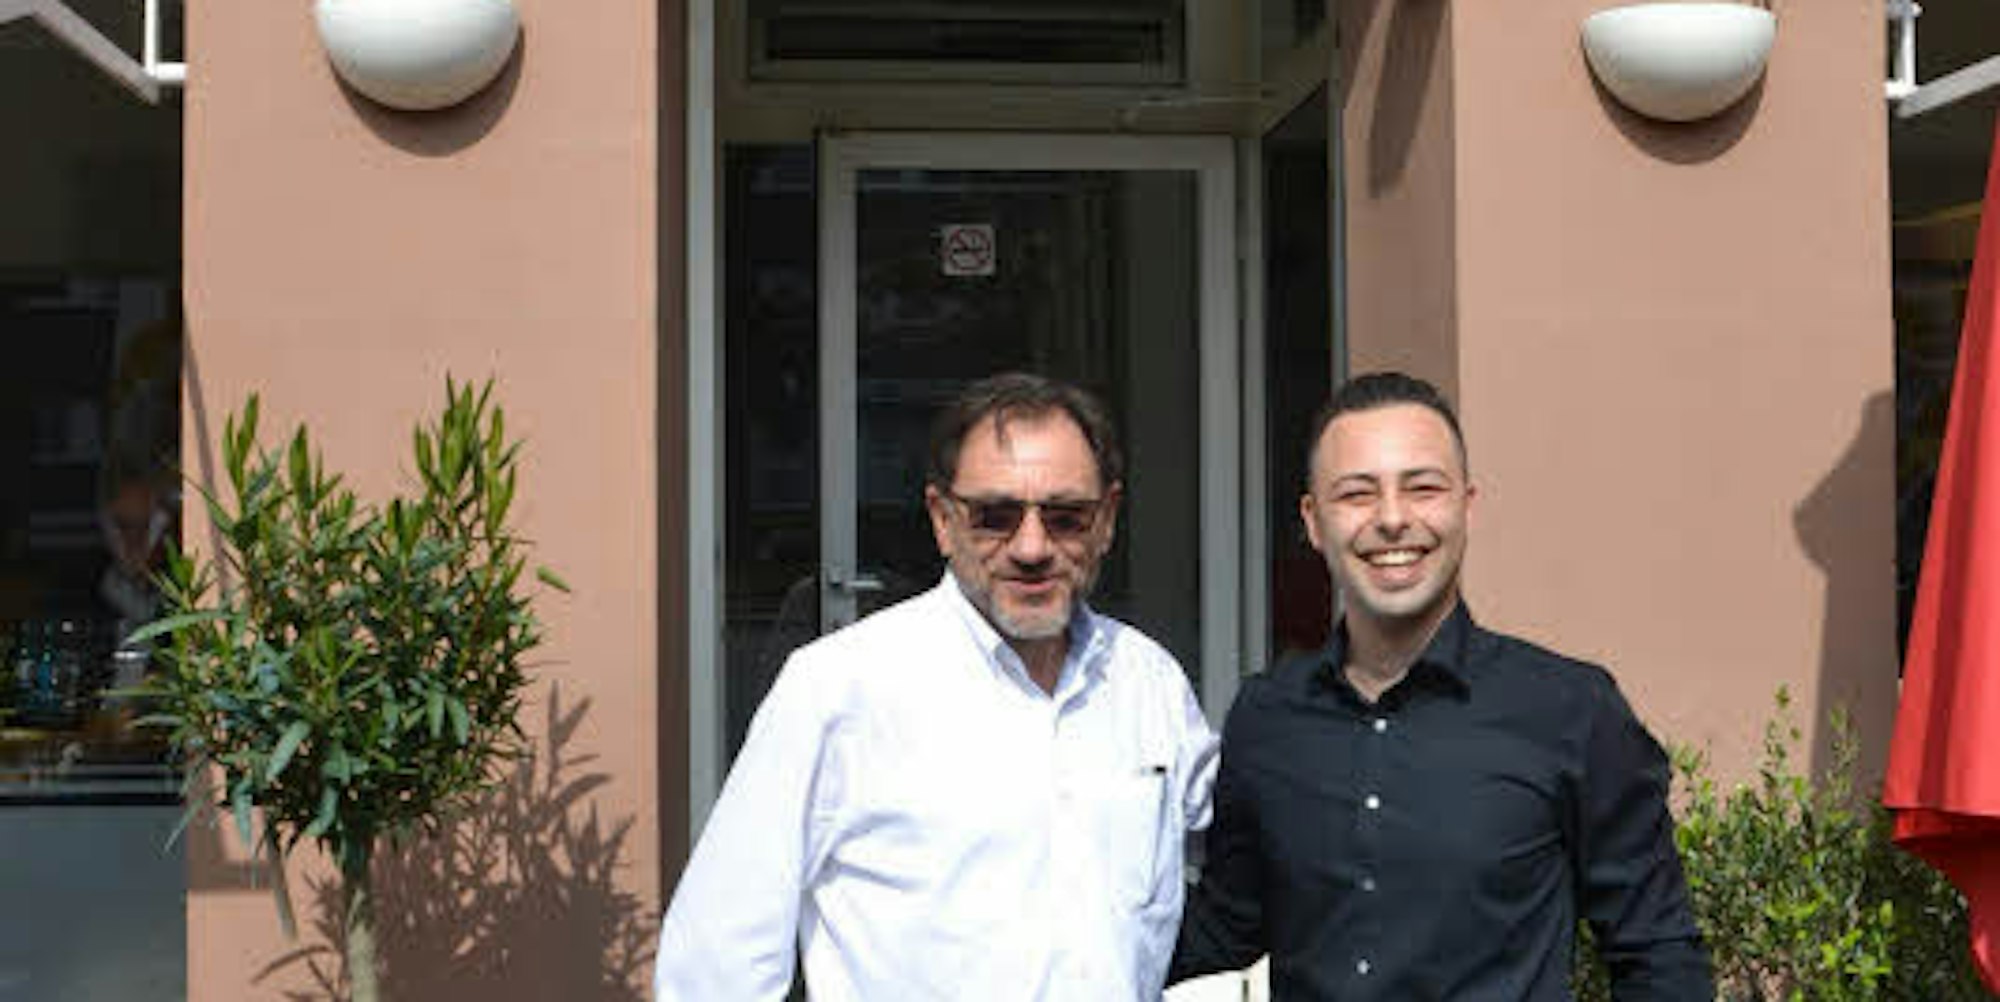 Entscheidend für die Übernahme des Lokals war für Mario Moranelli (l.) die Zusage von Franco Prato, ihn zu unterstützen.